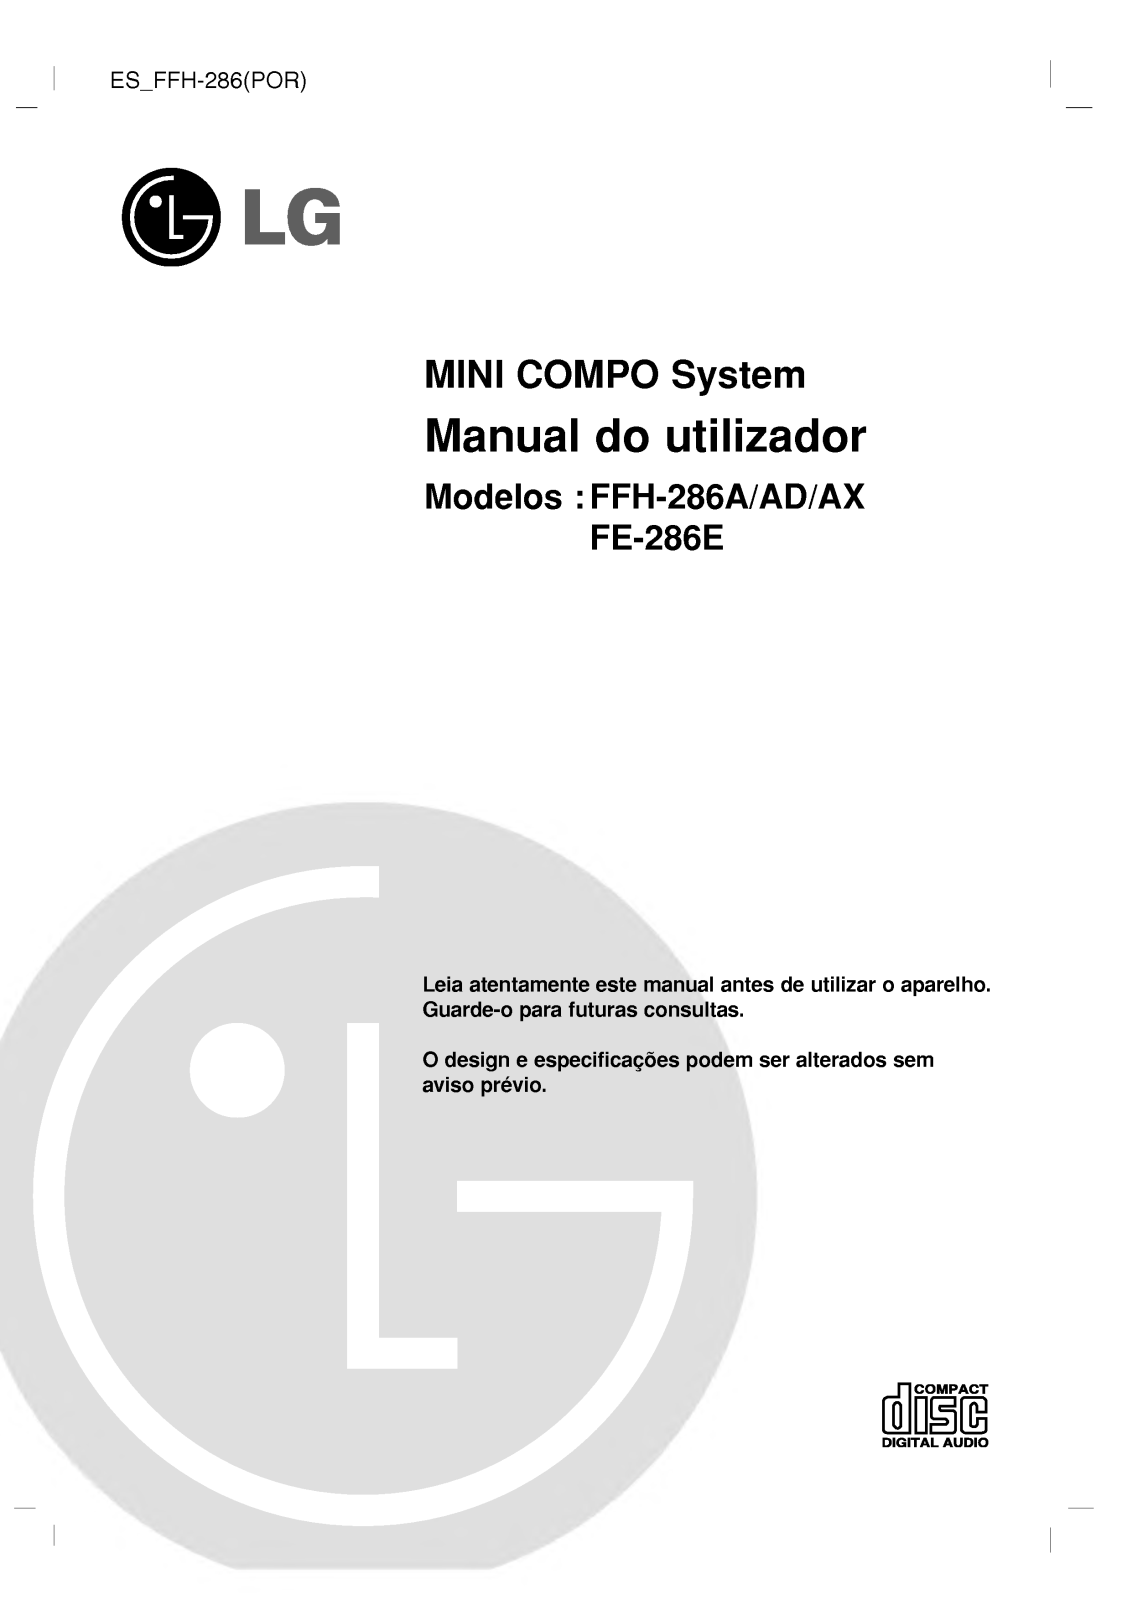 Lg FFH-286a, FFh-286AD, FFH-286AX, FE-286E User Manual